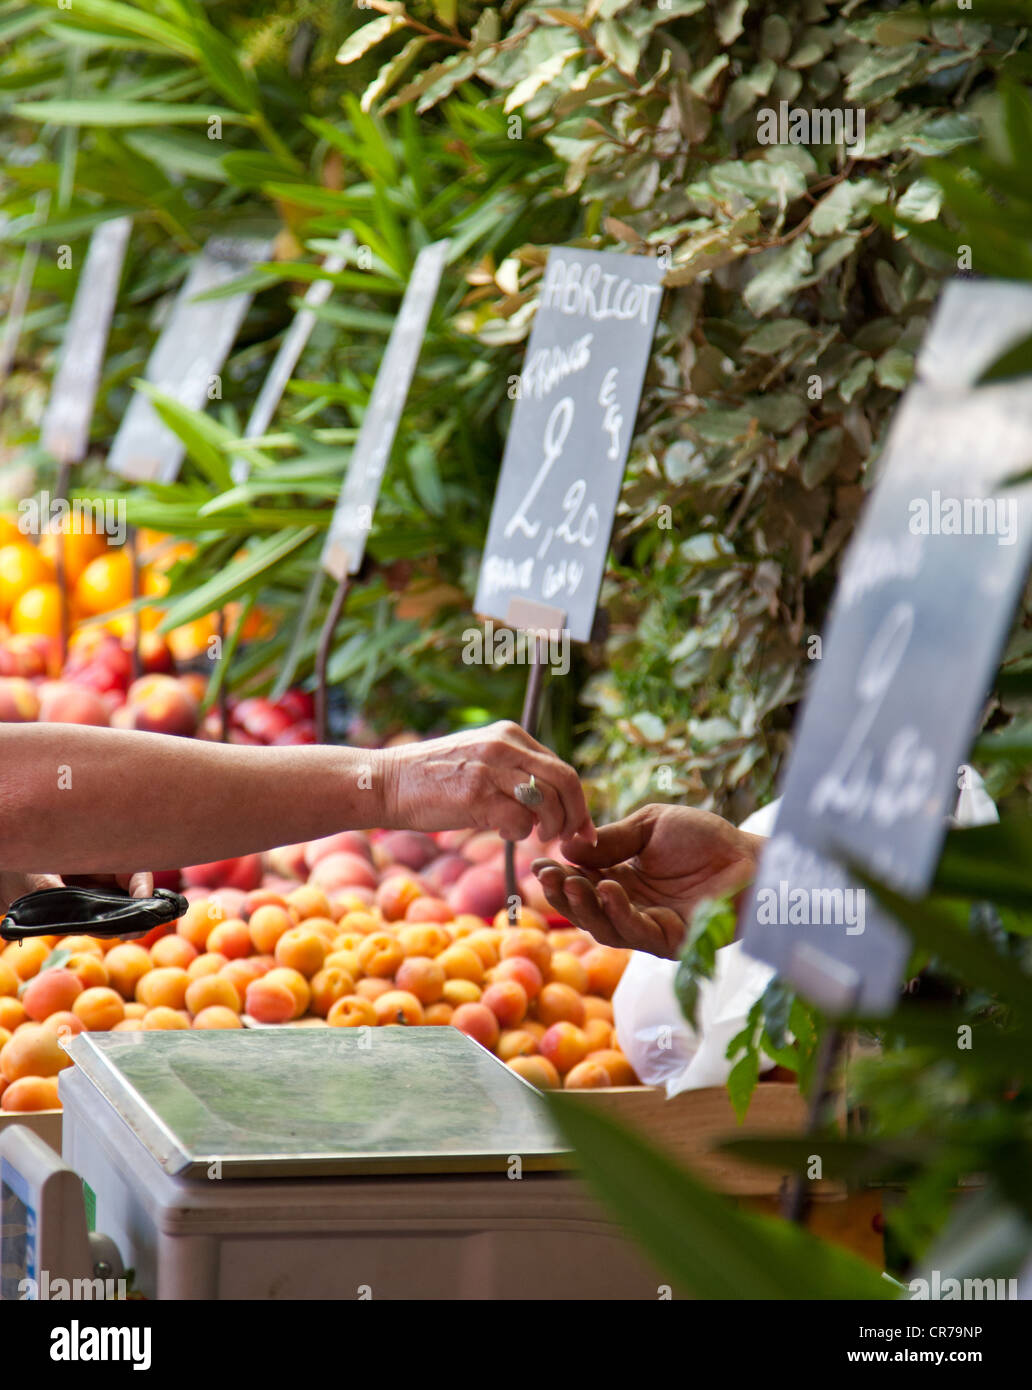 Décrochage du marché traditionnel provençal offrant des fruits frais. Banque D'Images